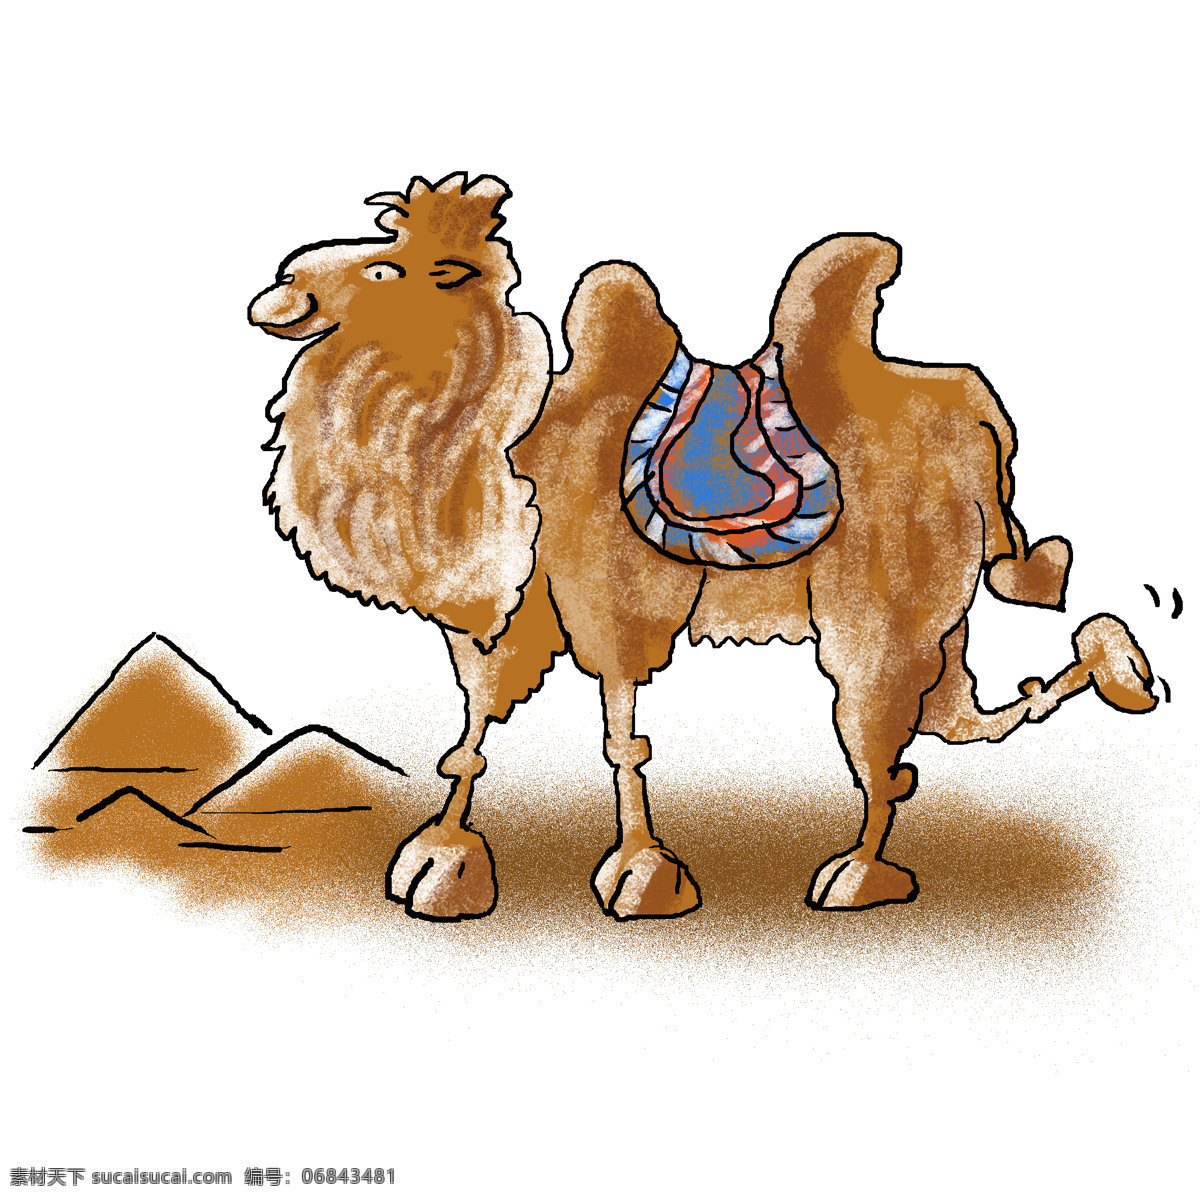 骆驼 卖萌 沙漠 大地 大地色 沙子 沙 金字塔 动物 手绘 手画线 沙梨 古迹 埃及 文化艺术 绘画书法